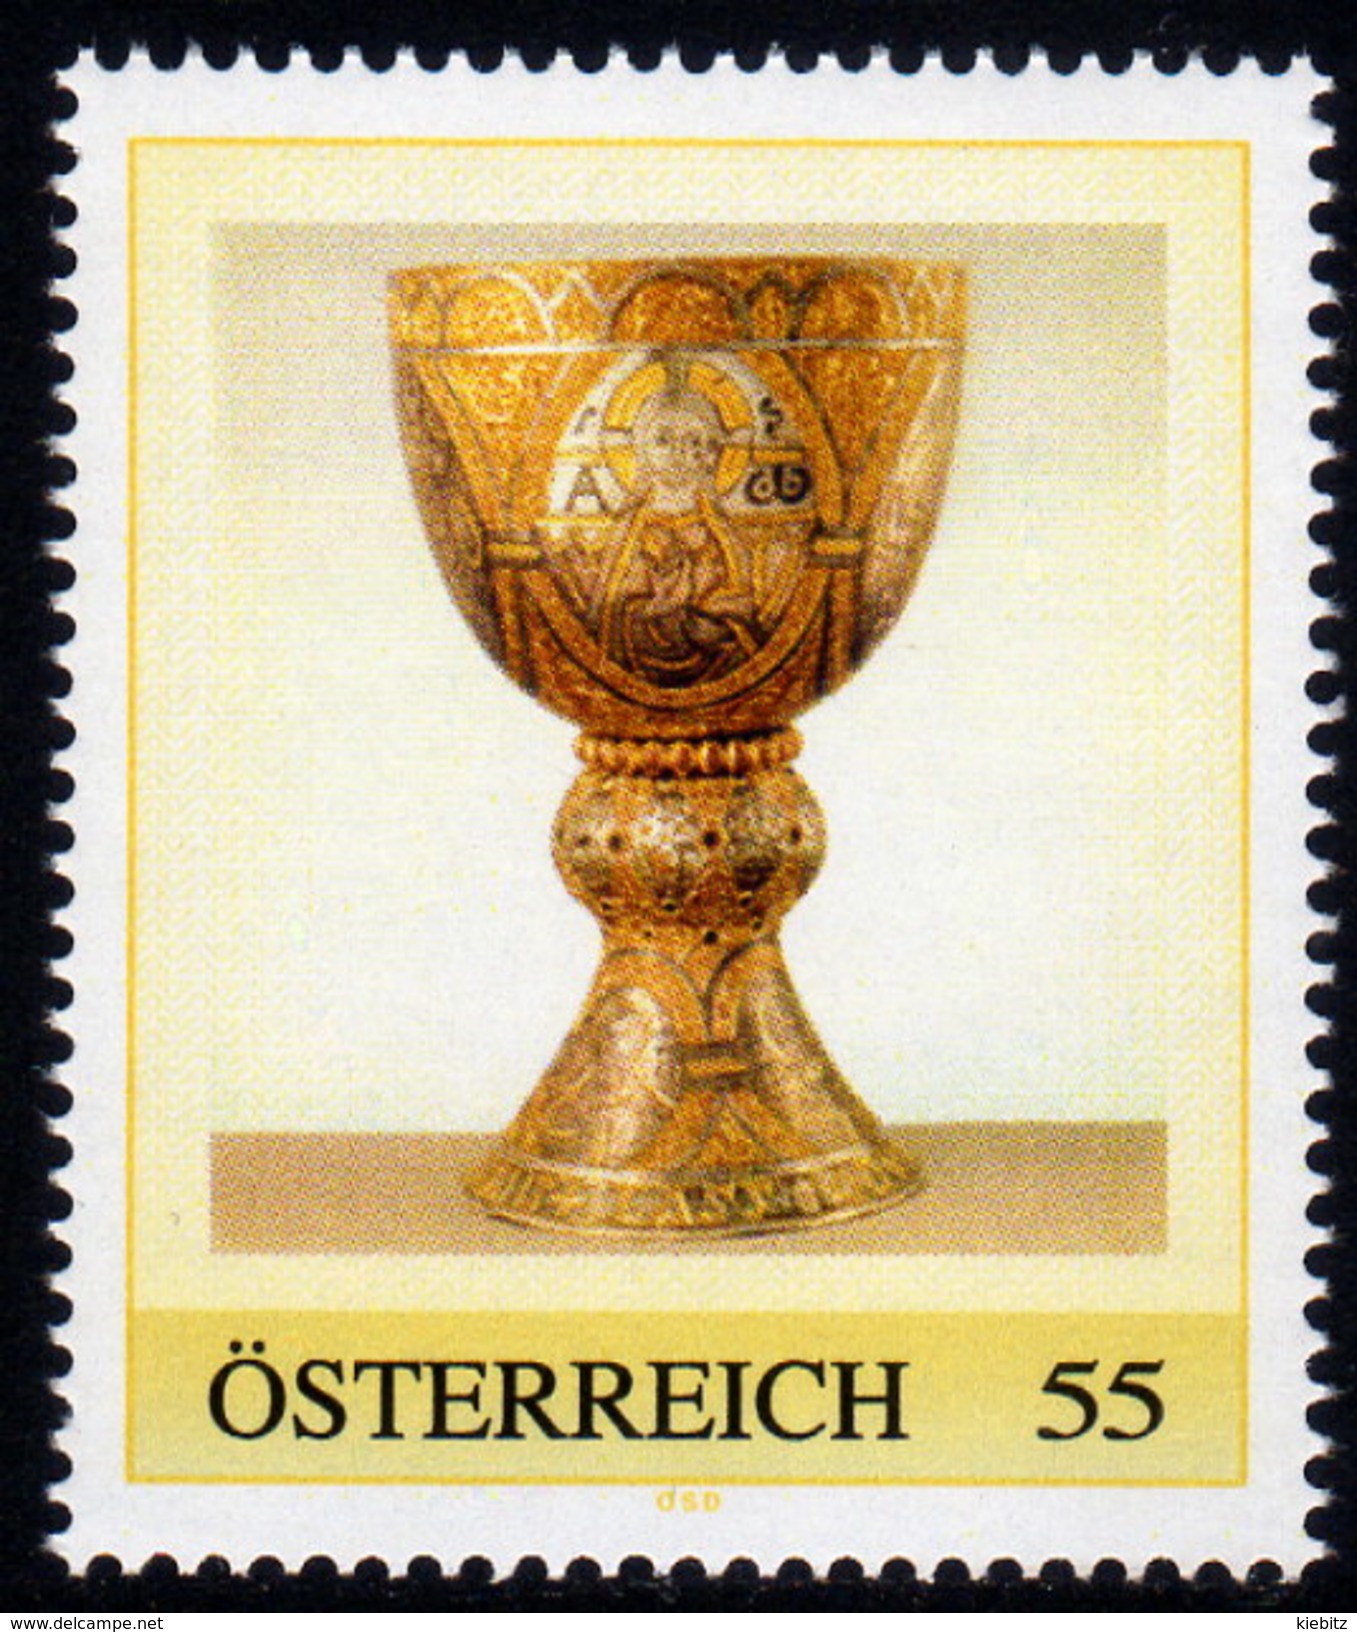 ÖSTERREICH 2008 ** Tassilokelch, Stift Kremsmünster - PM Personalized Stamp MNH - Christentum